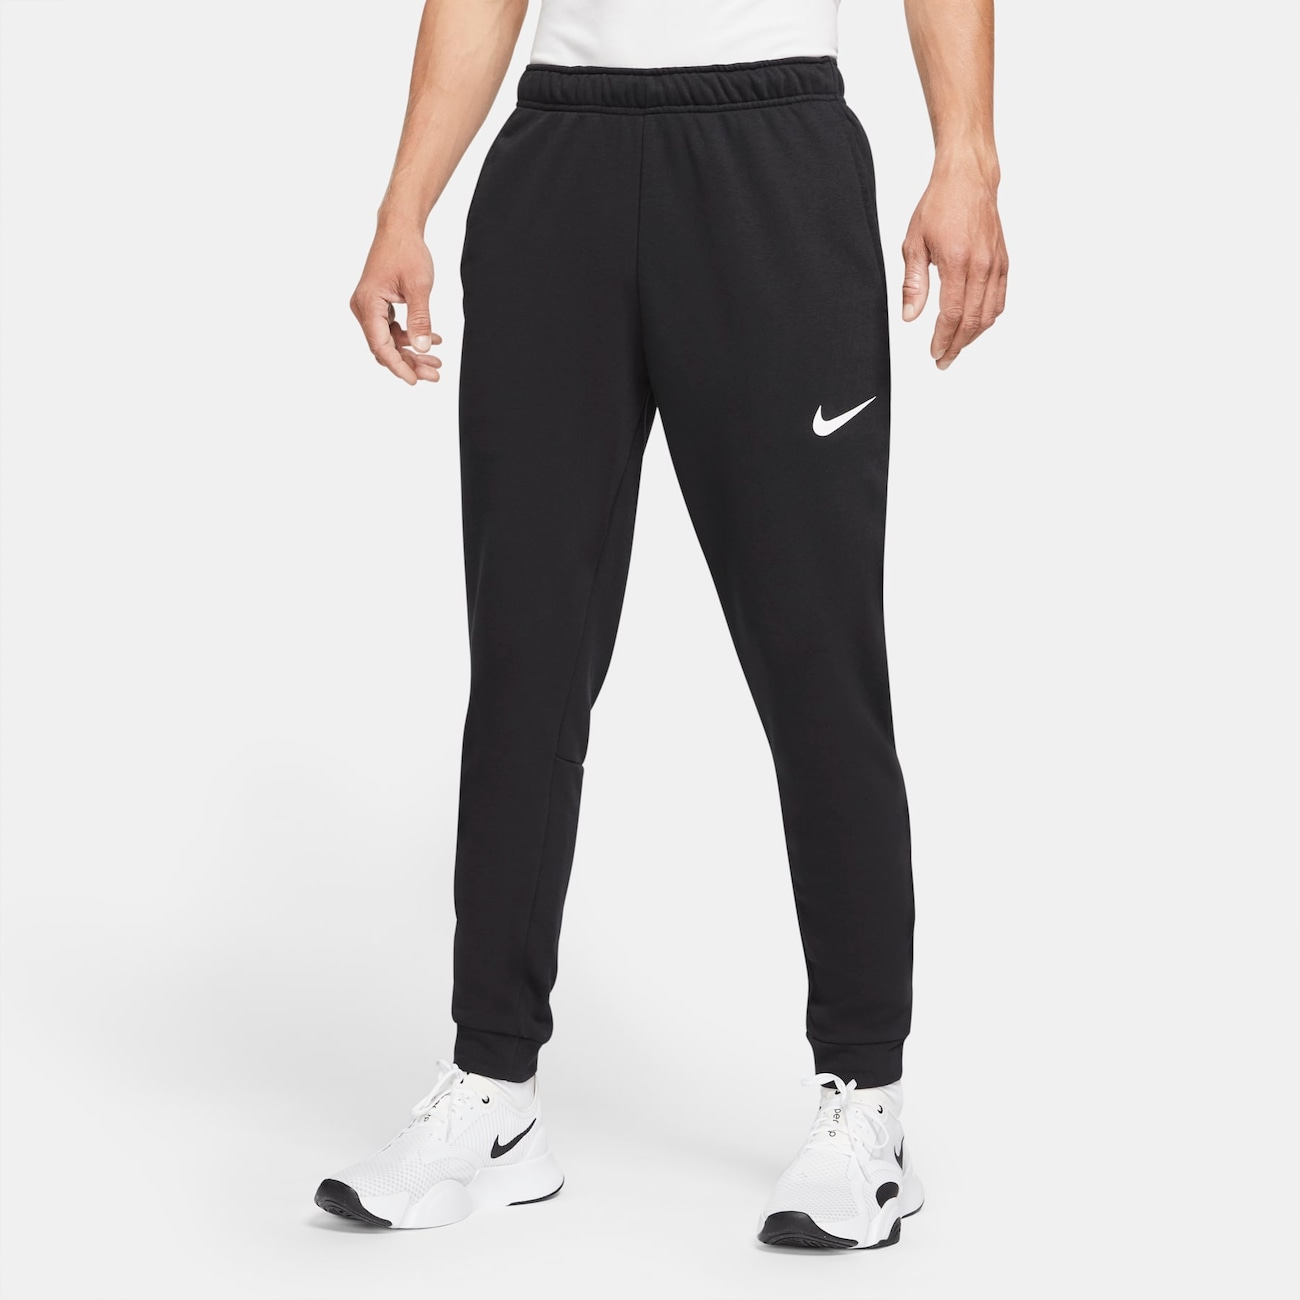 Calça Nike Dri-FIT Masculina - Foto 1